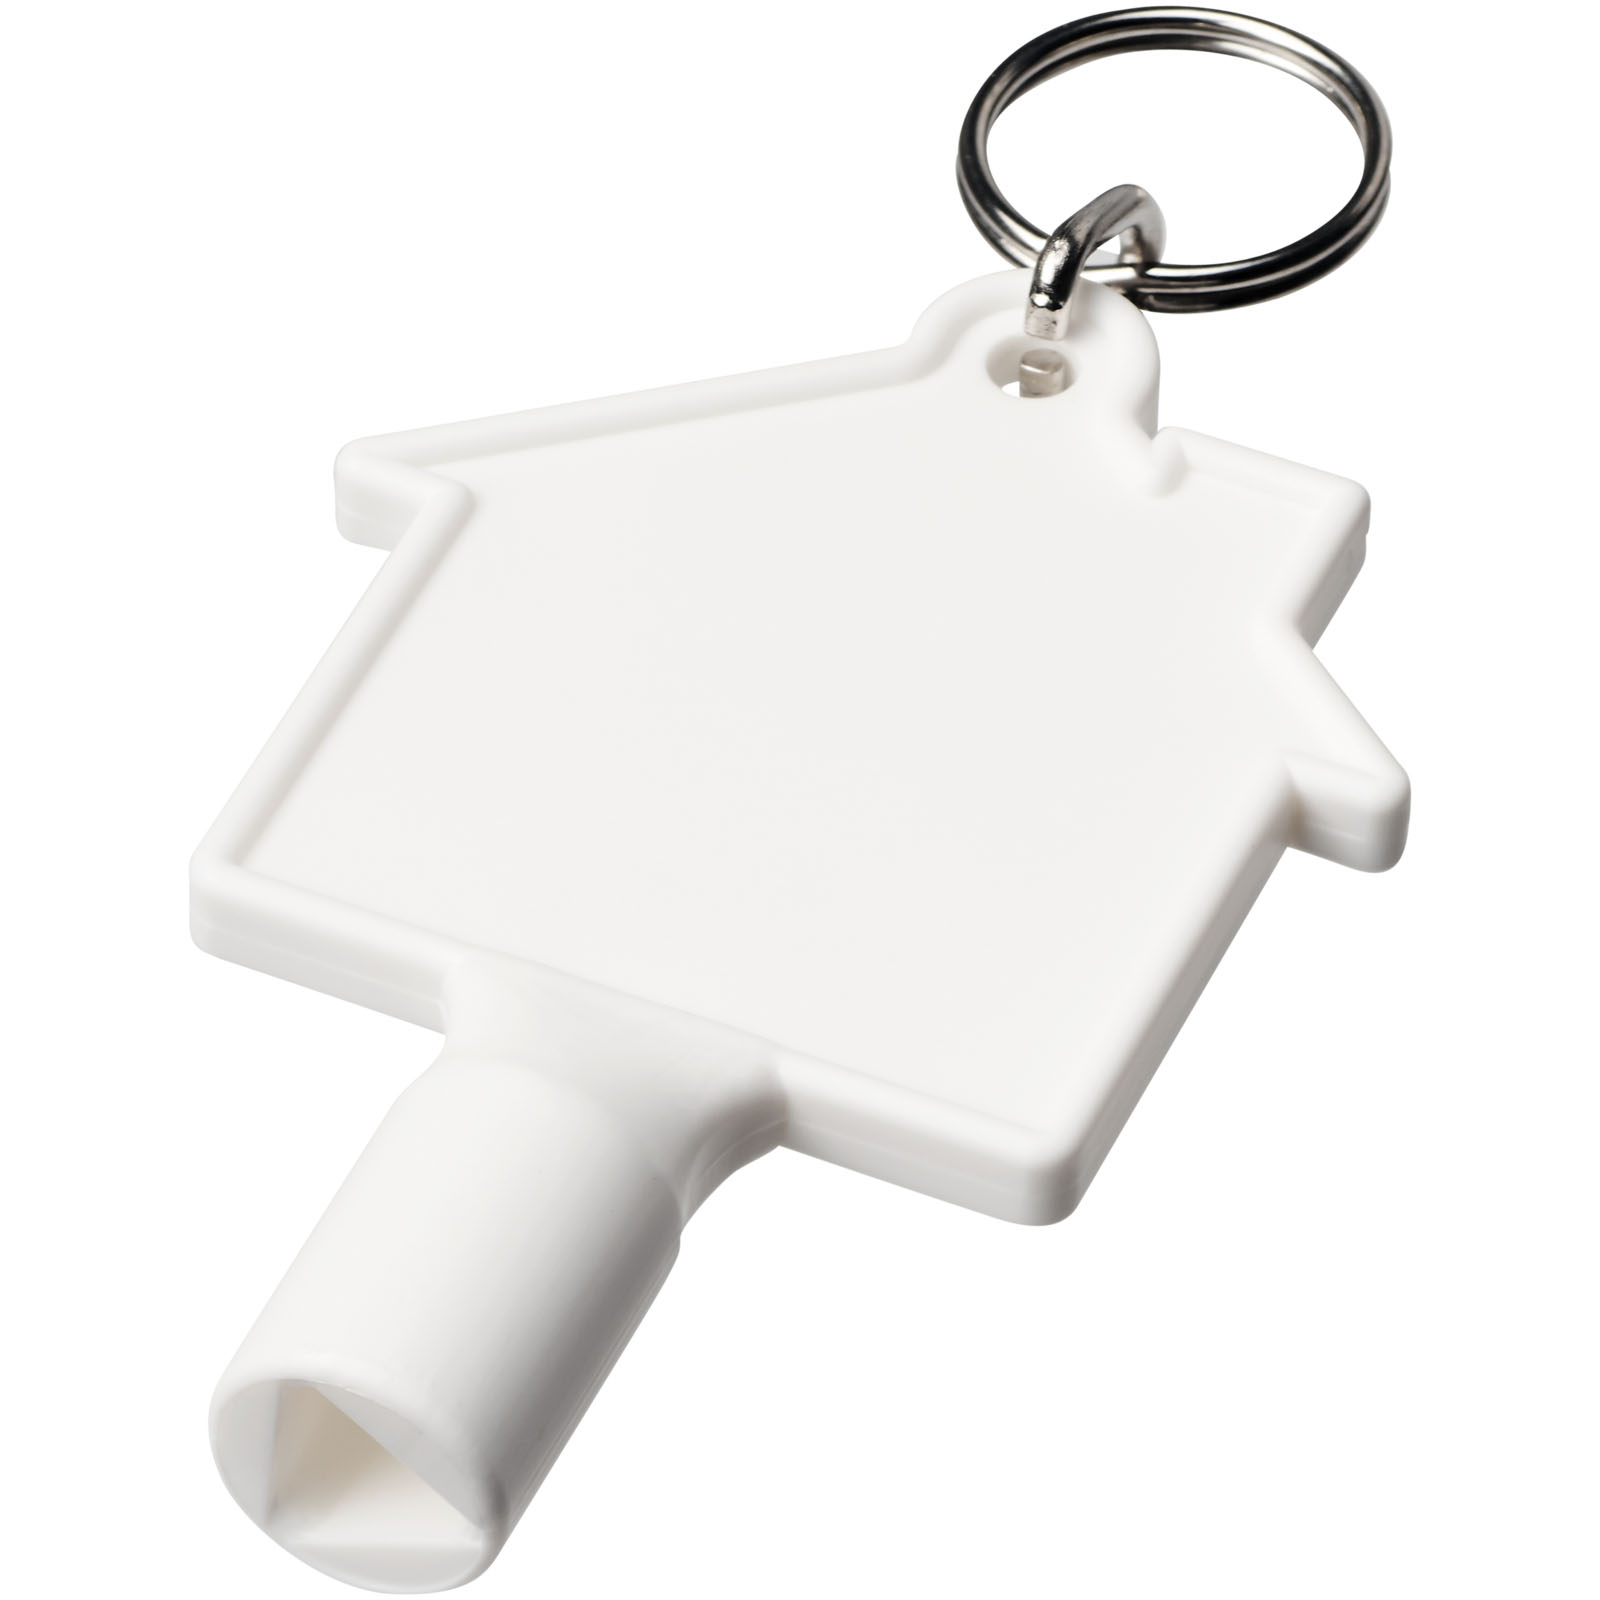 Porte-clés - Porte-clés Maximilian pour clé utilitaire recyclée en forme de maison